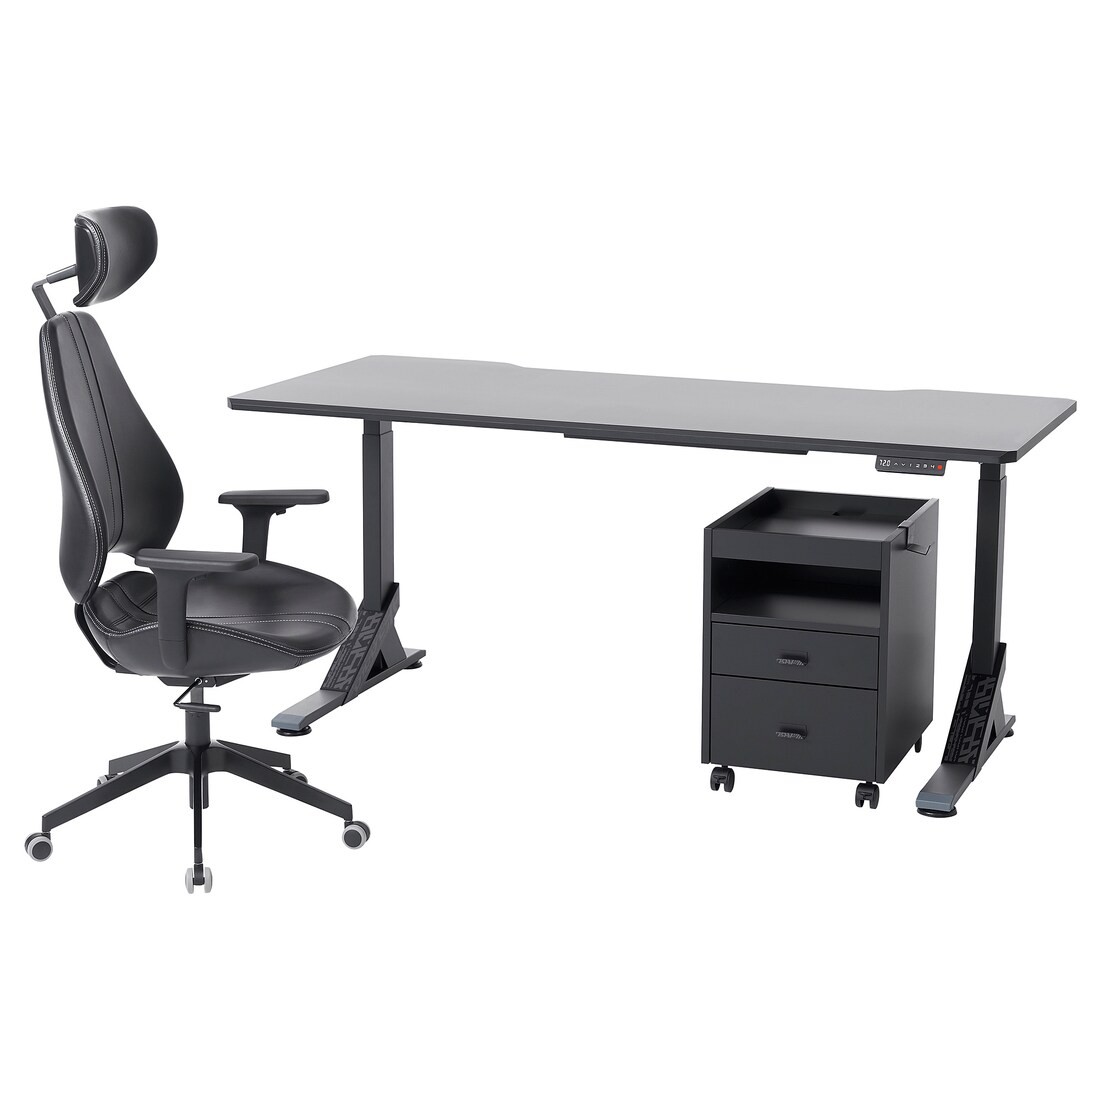 UPPSPEL УППСПЕЛЬ / GRUPPSPEL Письменный стол, стул и комод, черный / Grann черный, 180x80 cм